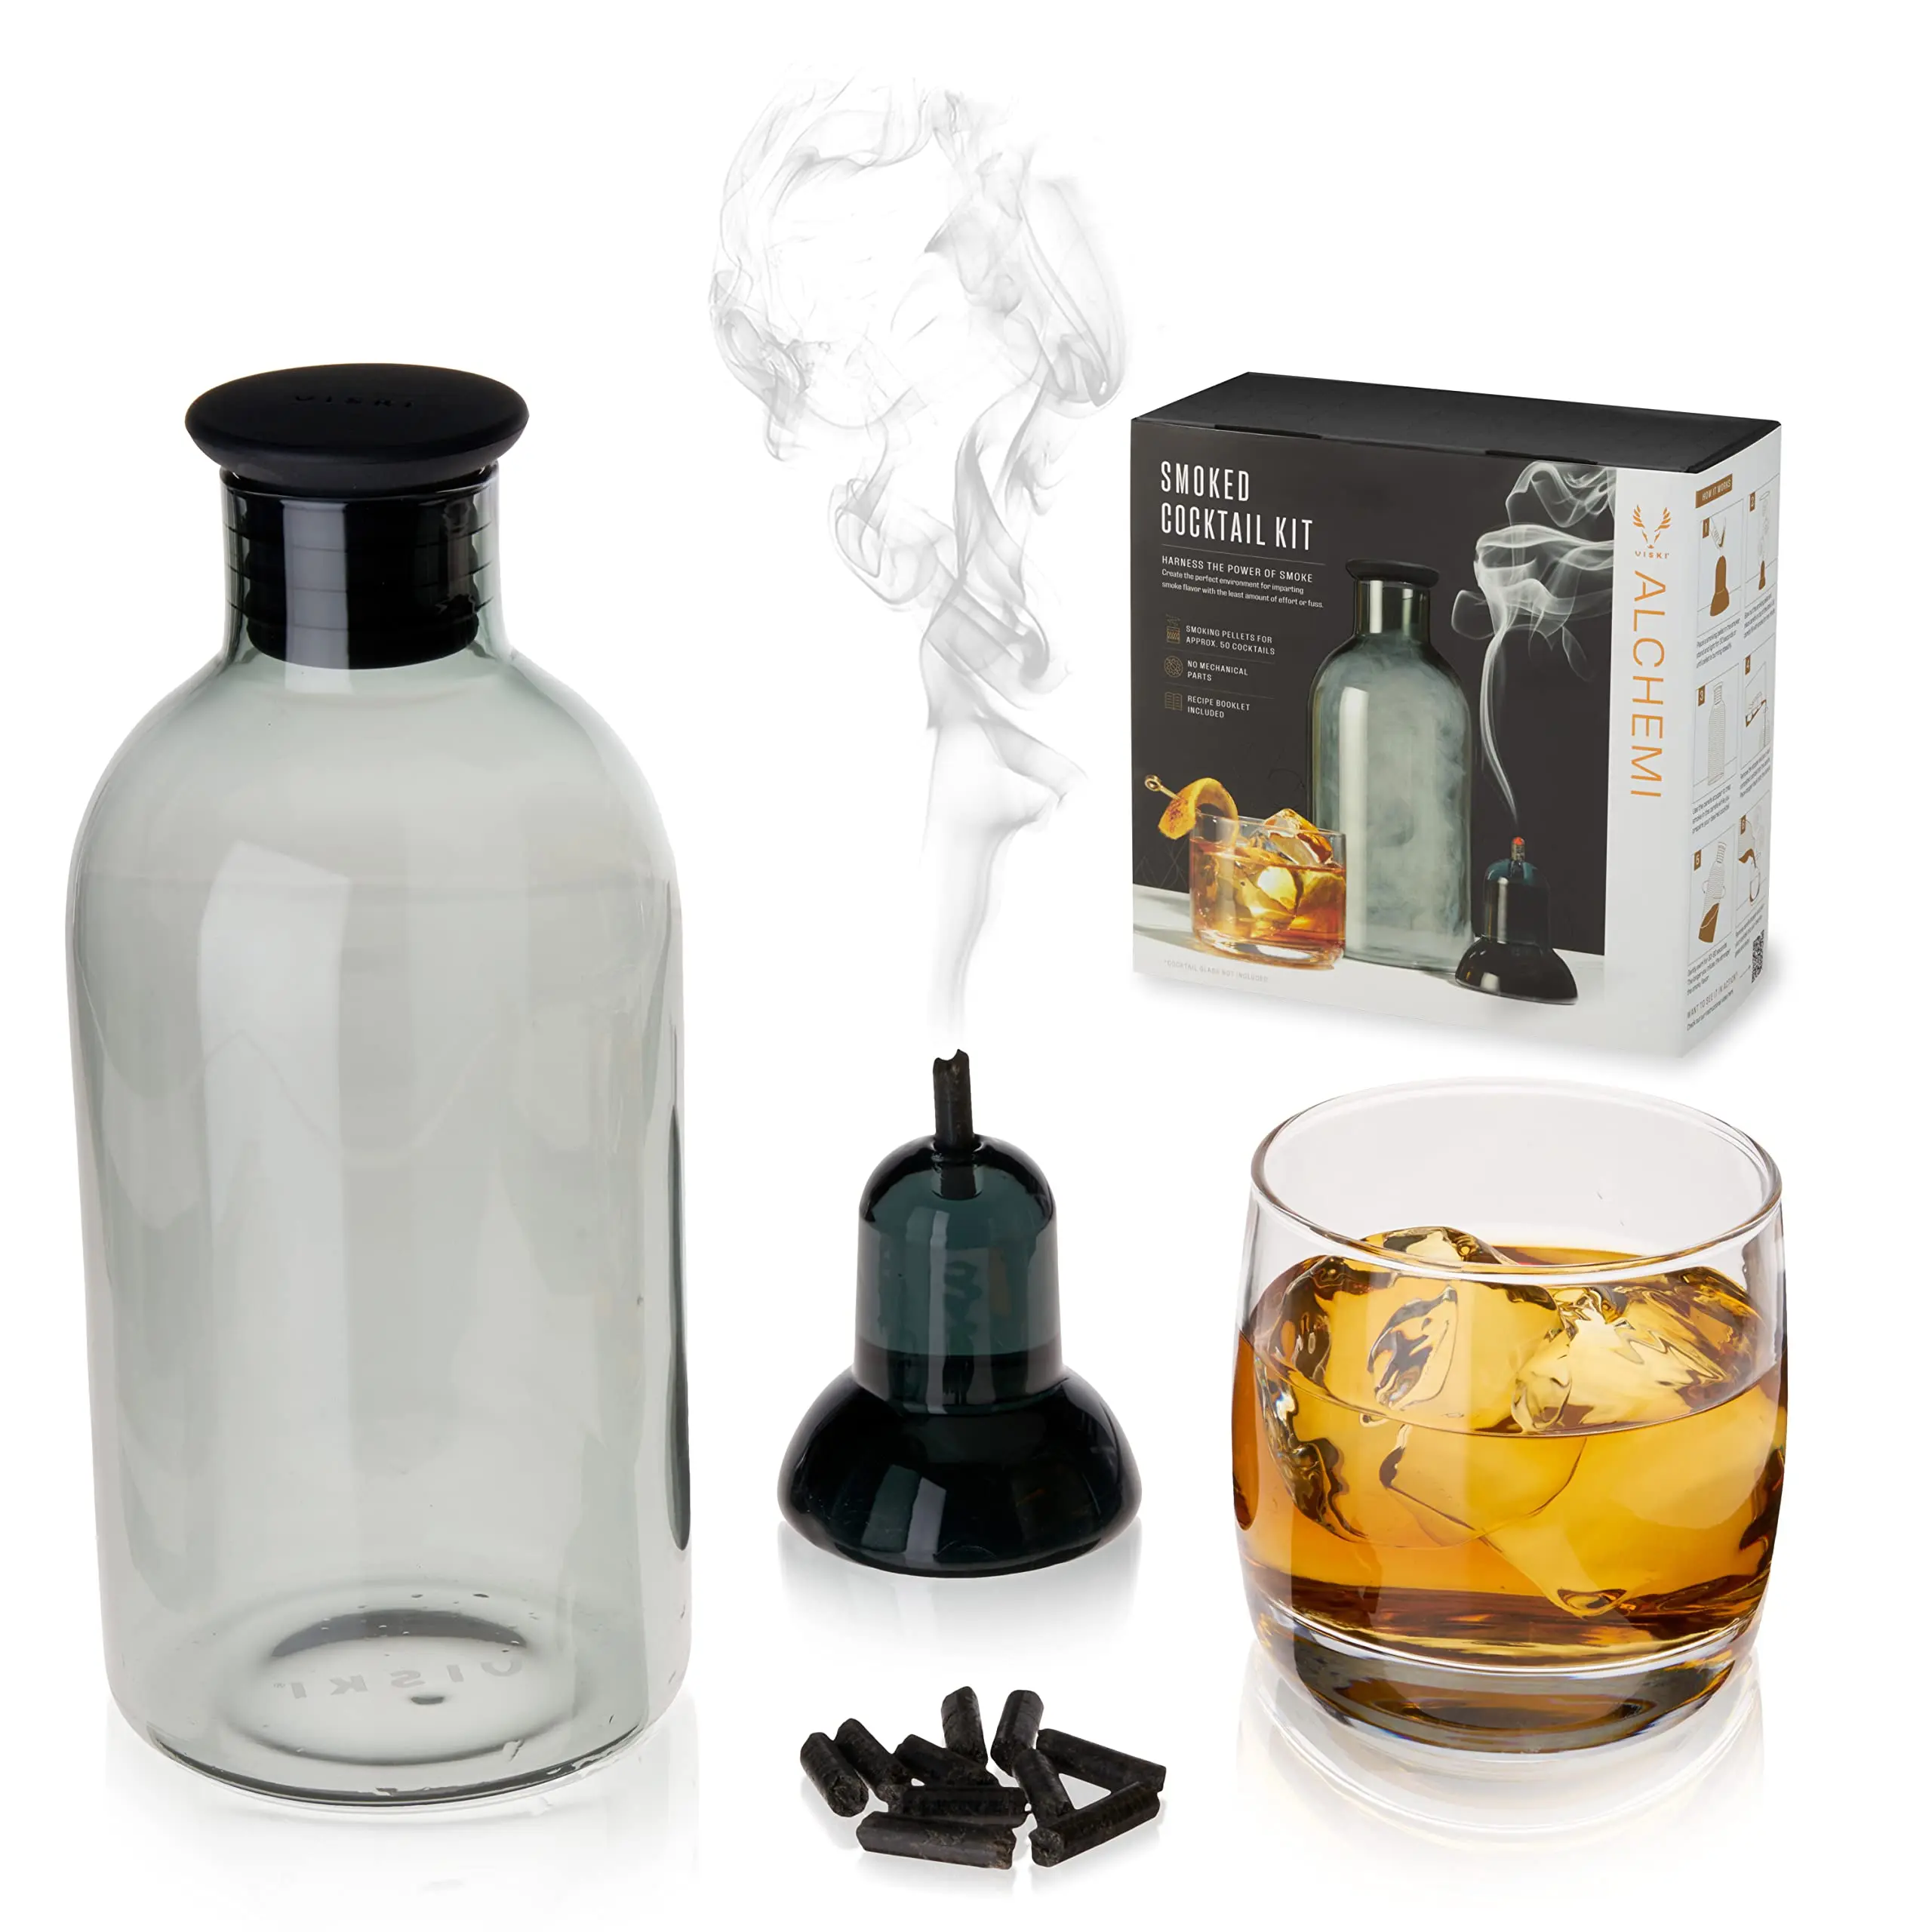 viski smoked cocktail kit - How do you use a viski smoker